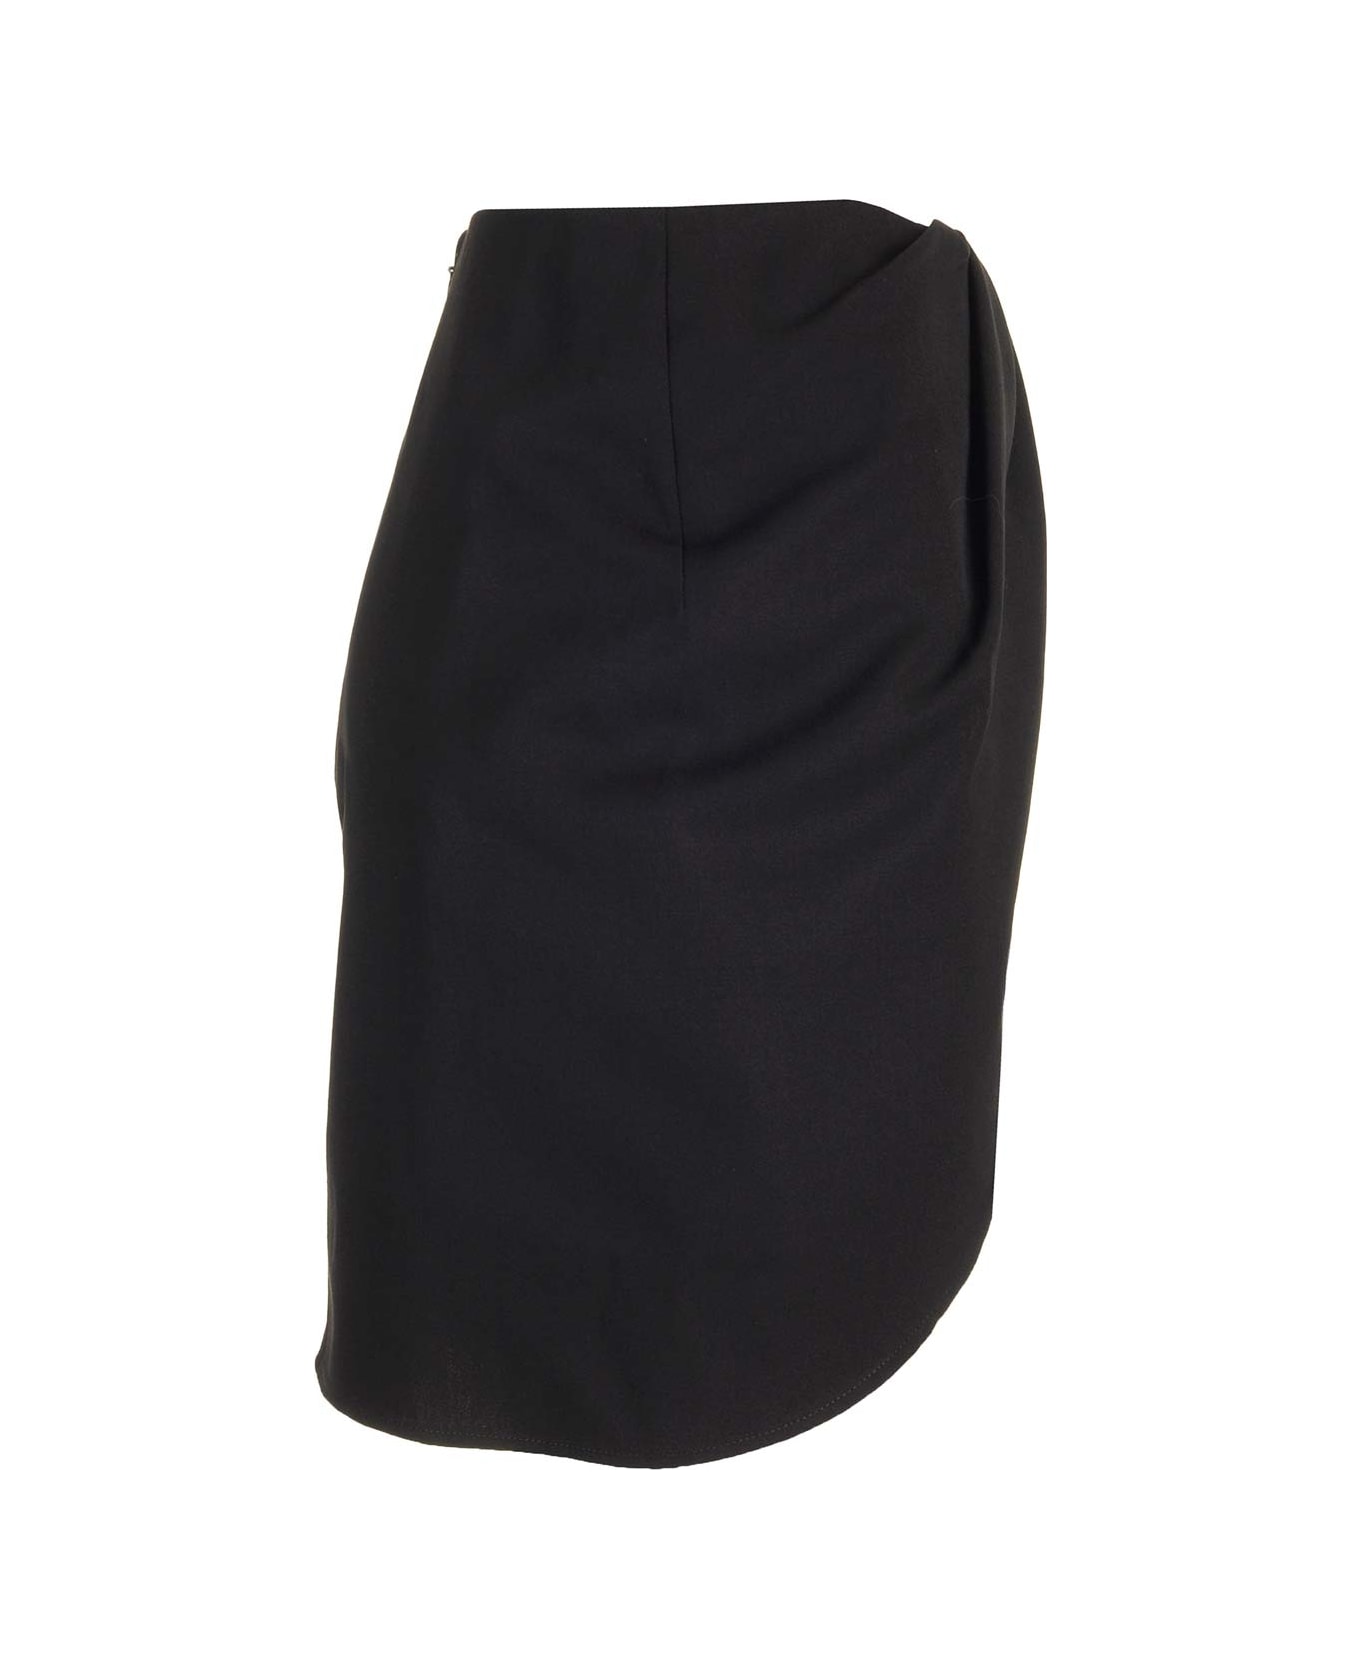 Off-White 'twist' Mini Skirt - Black スカート